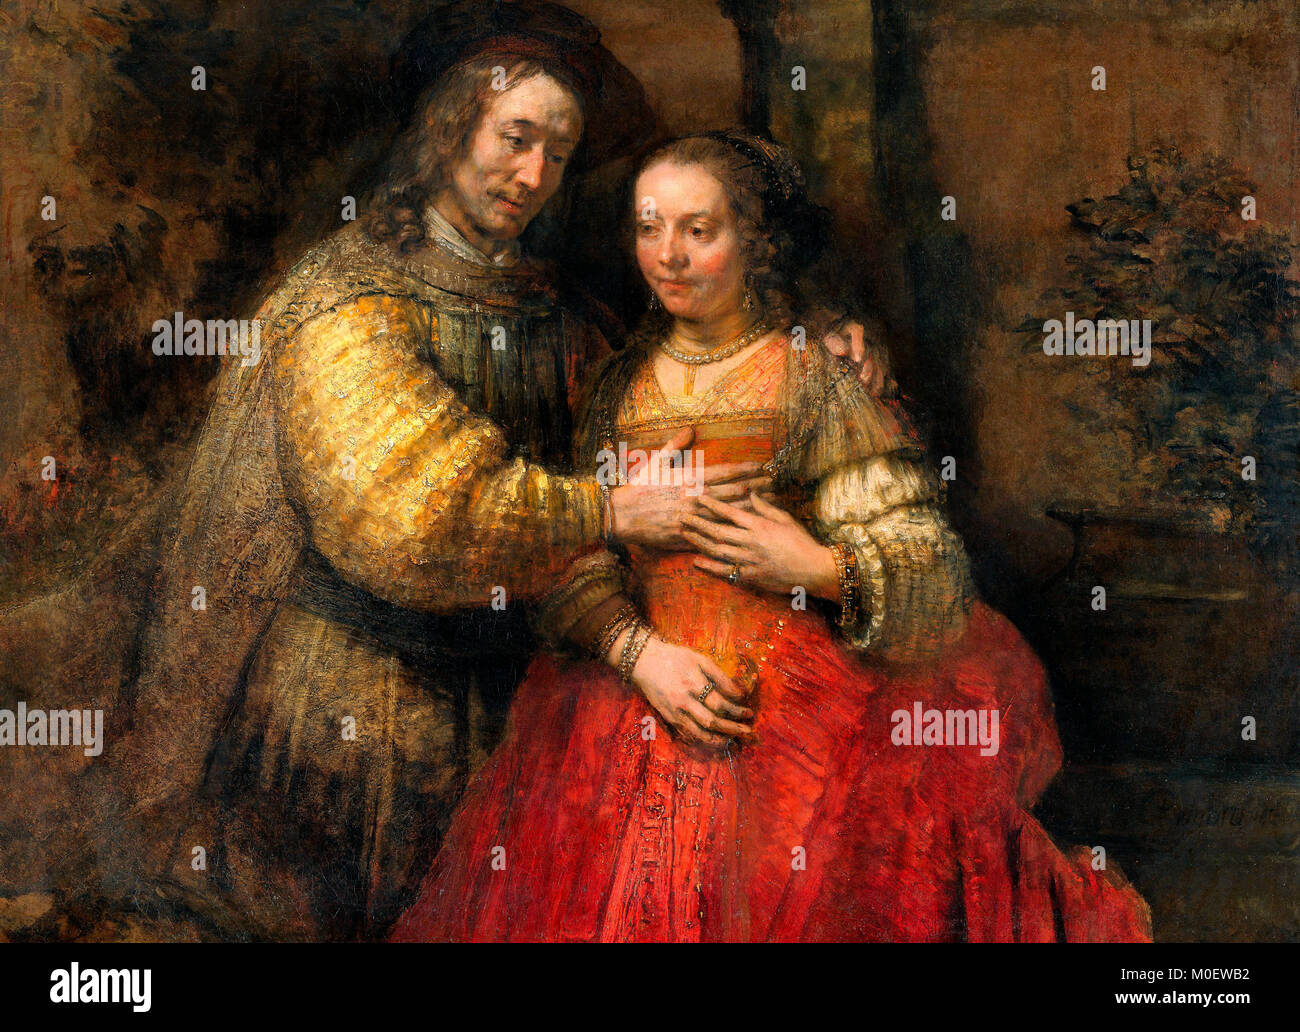 La sposa ebraica - Ritratto di una giovane come figure dell'Antico Testamento - Rembrandt van Rijn Foto Stock